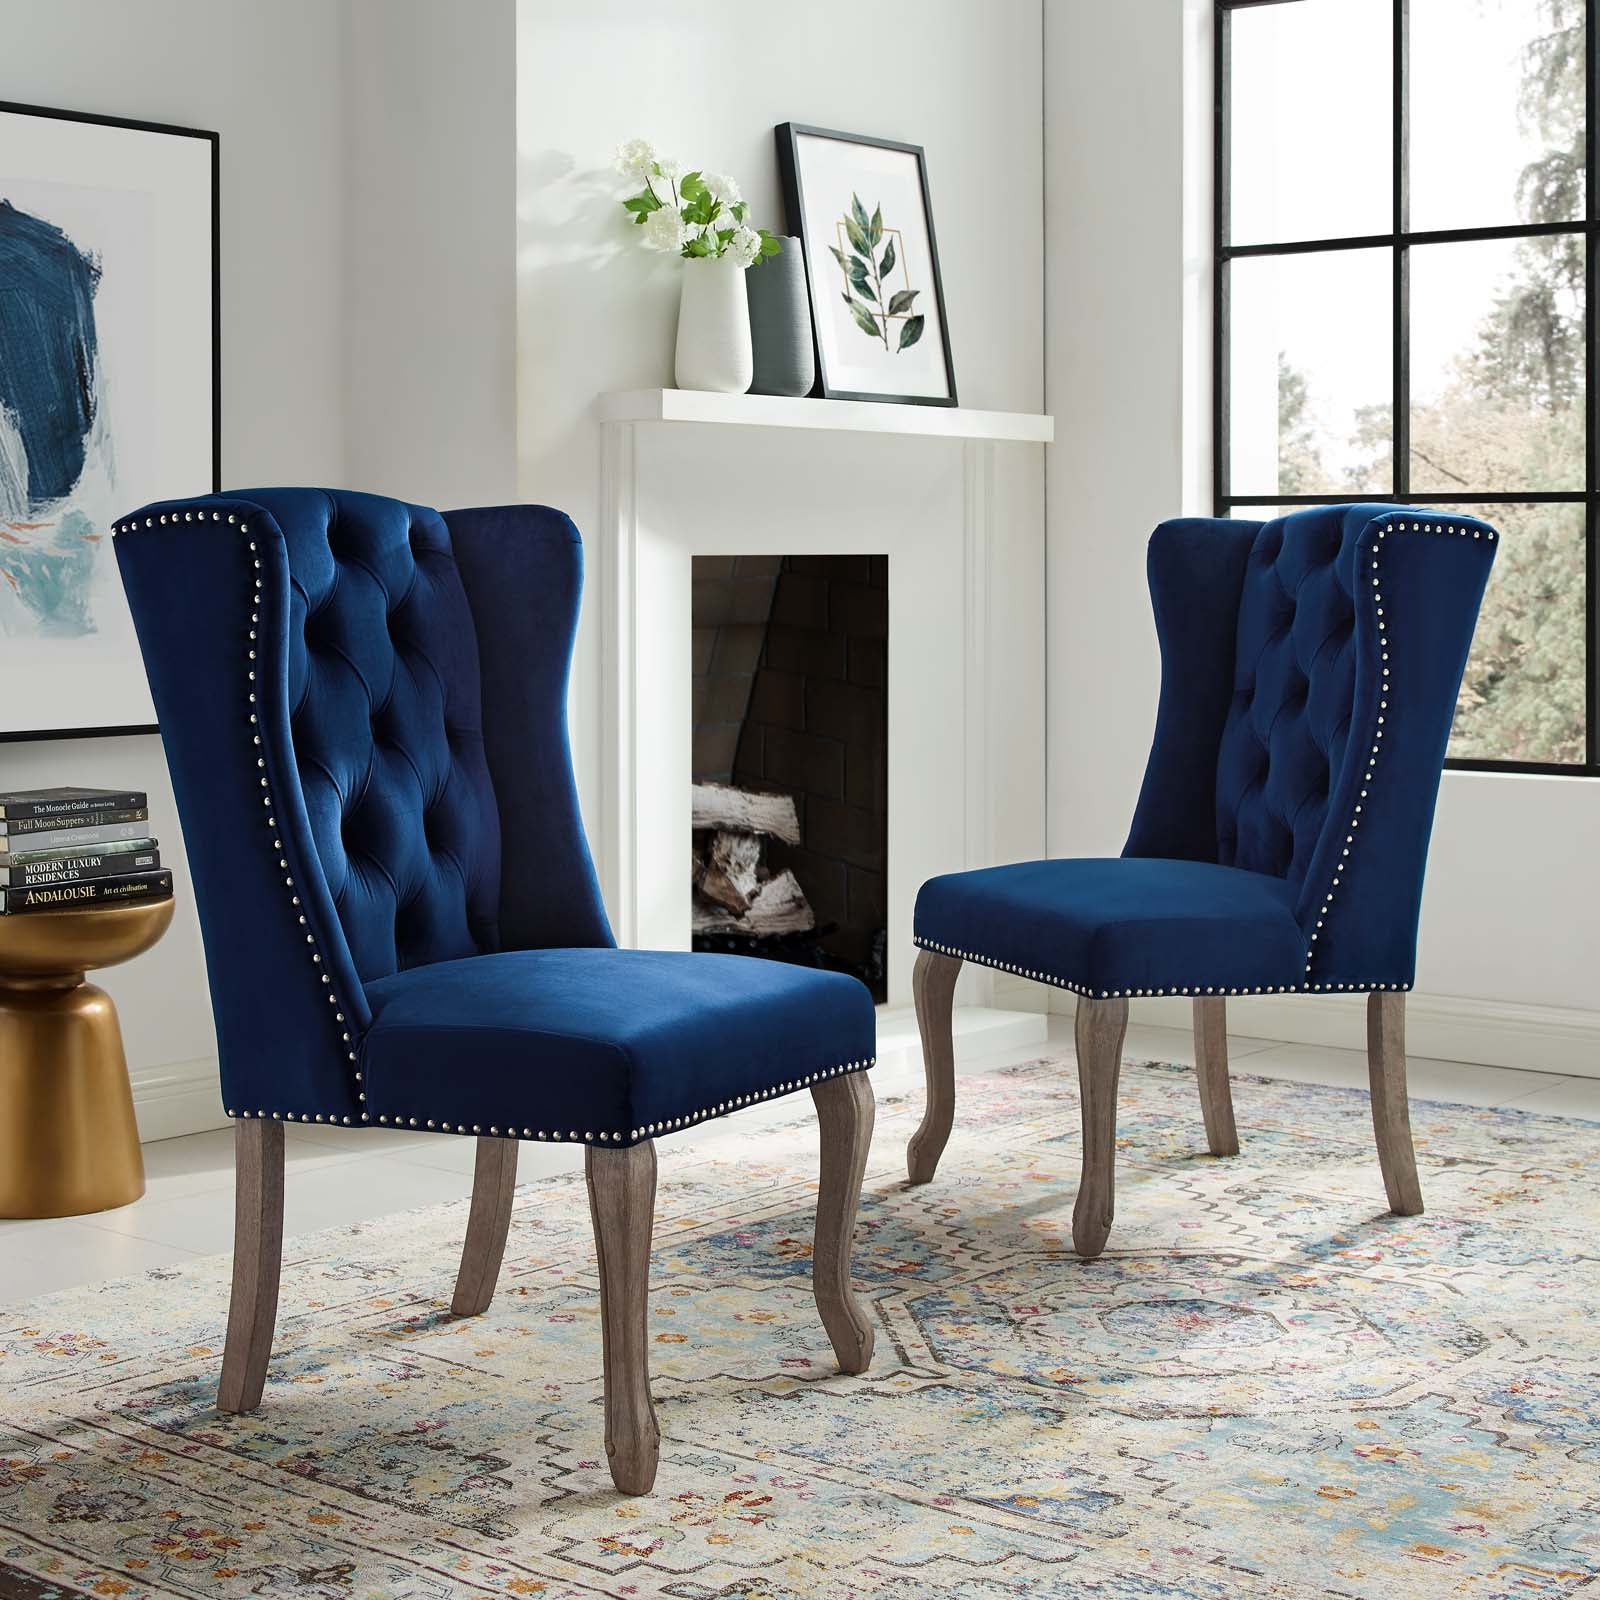 Apprise Side Chair Performance Velvet Set of 2 - East Shore Modern Home Furnishings